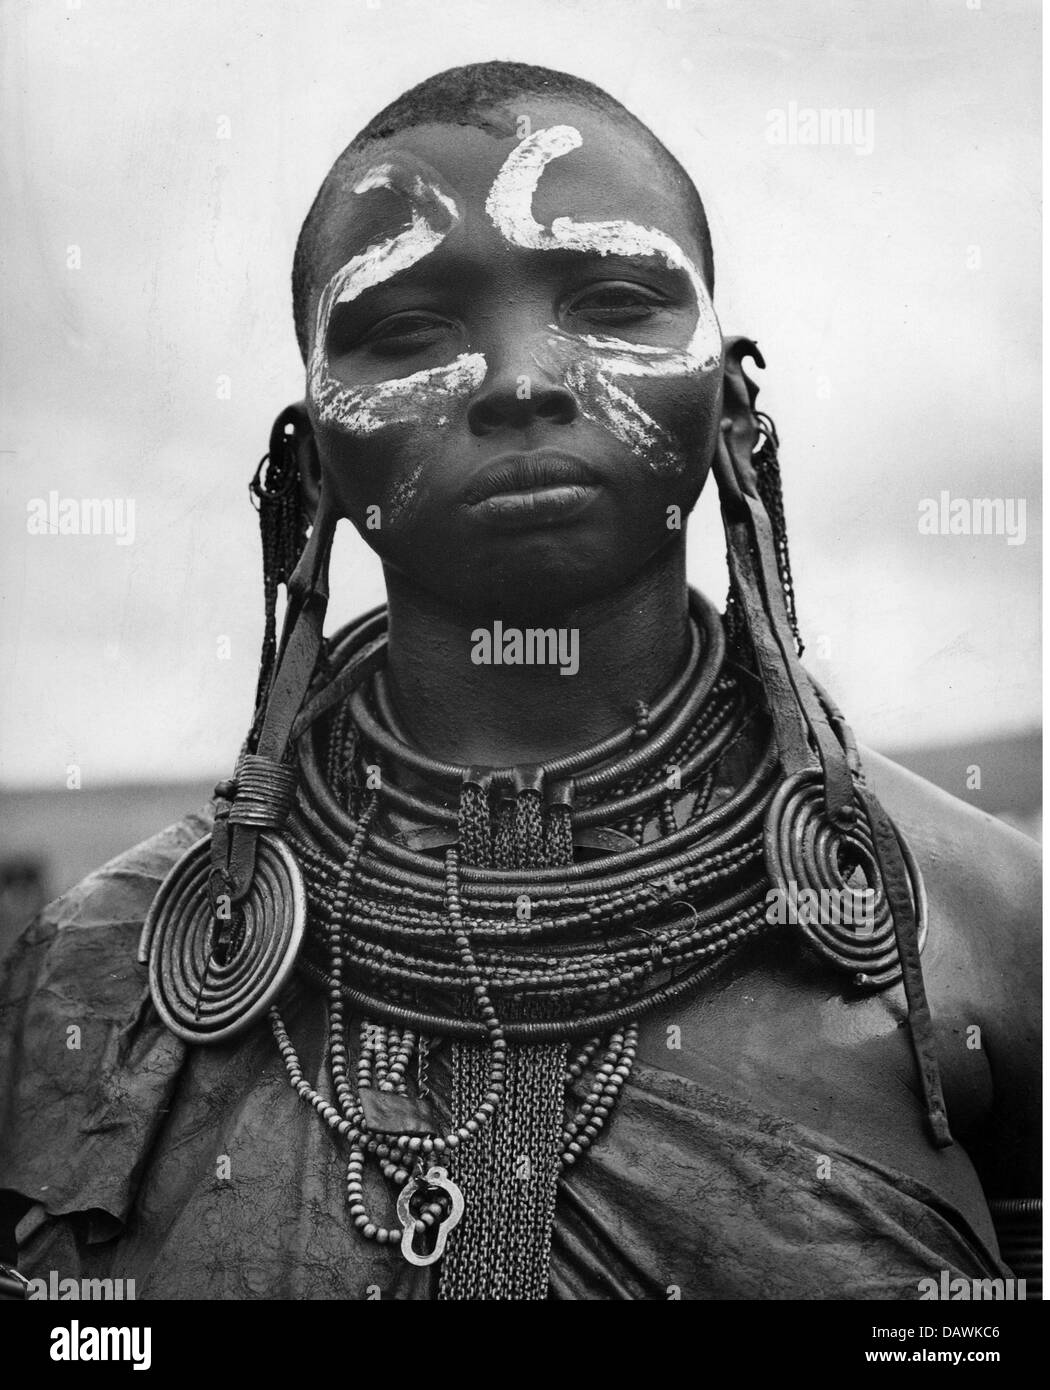 Personnes, ethniques, femmes, femme africaine, portrait avec peinture corporelle, années 1960, droits additionnels-Clearences-non disponible Banque D'Images